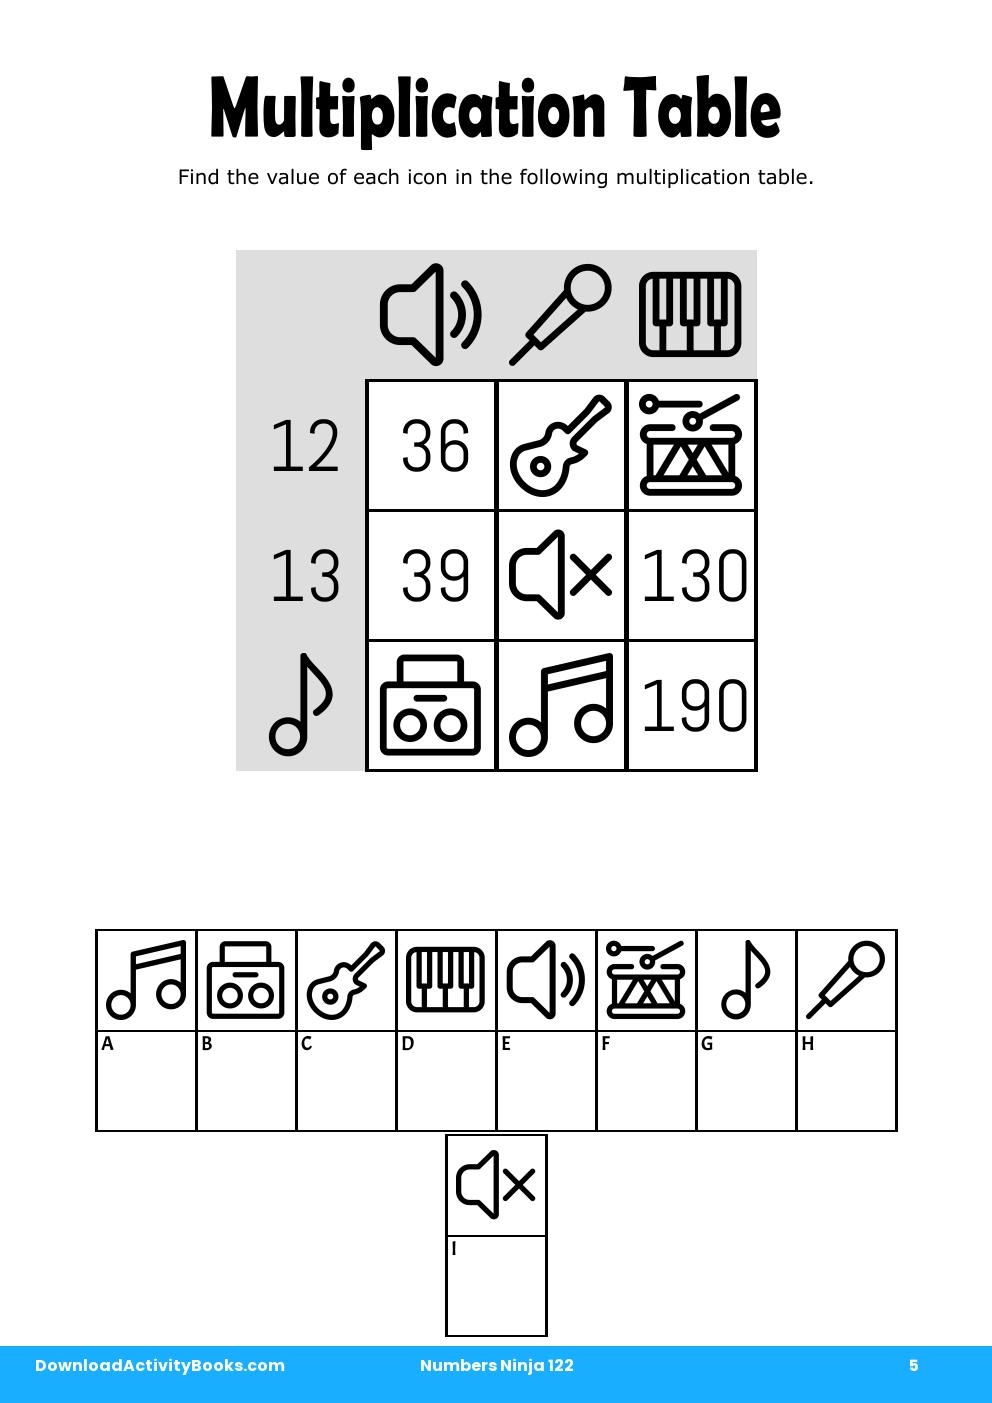 Multiplication Table in Numbers Ninja 122